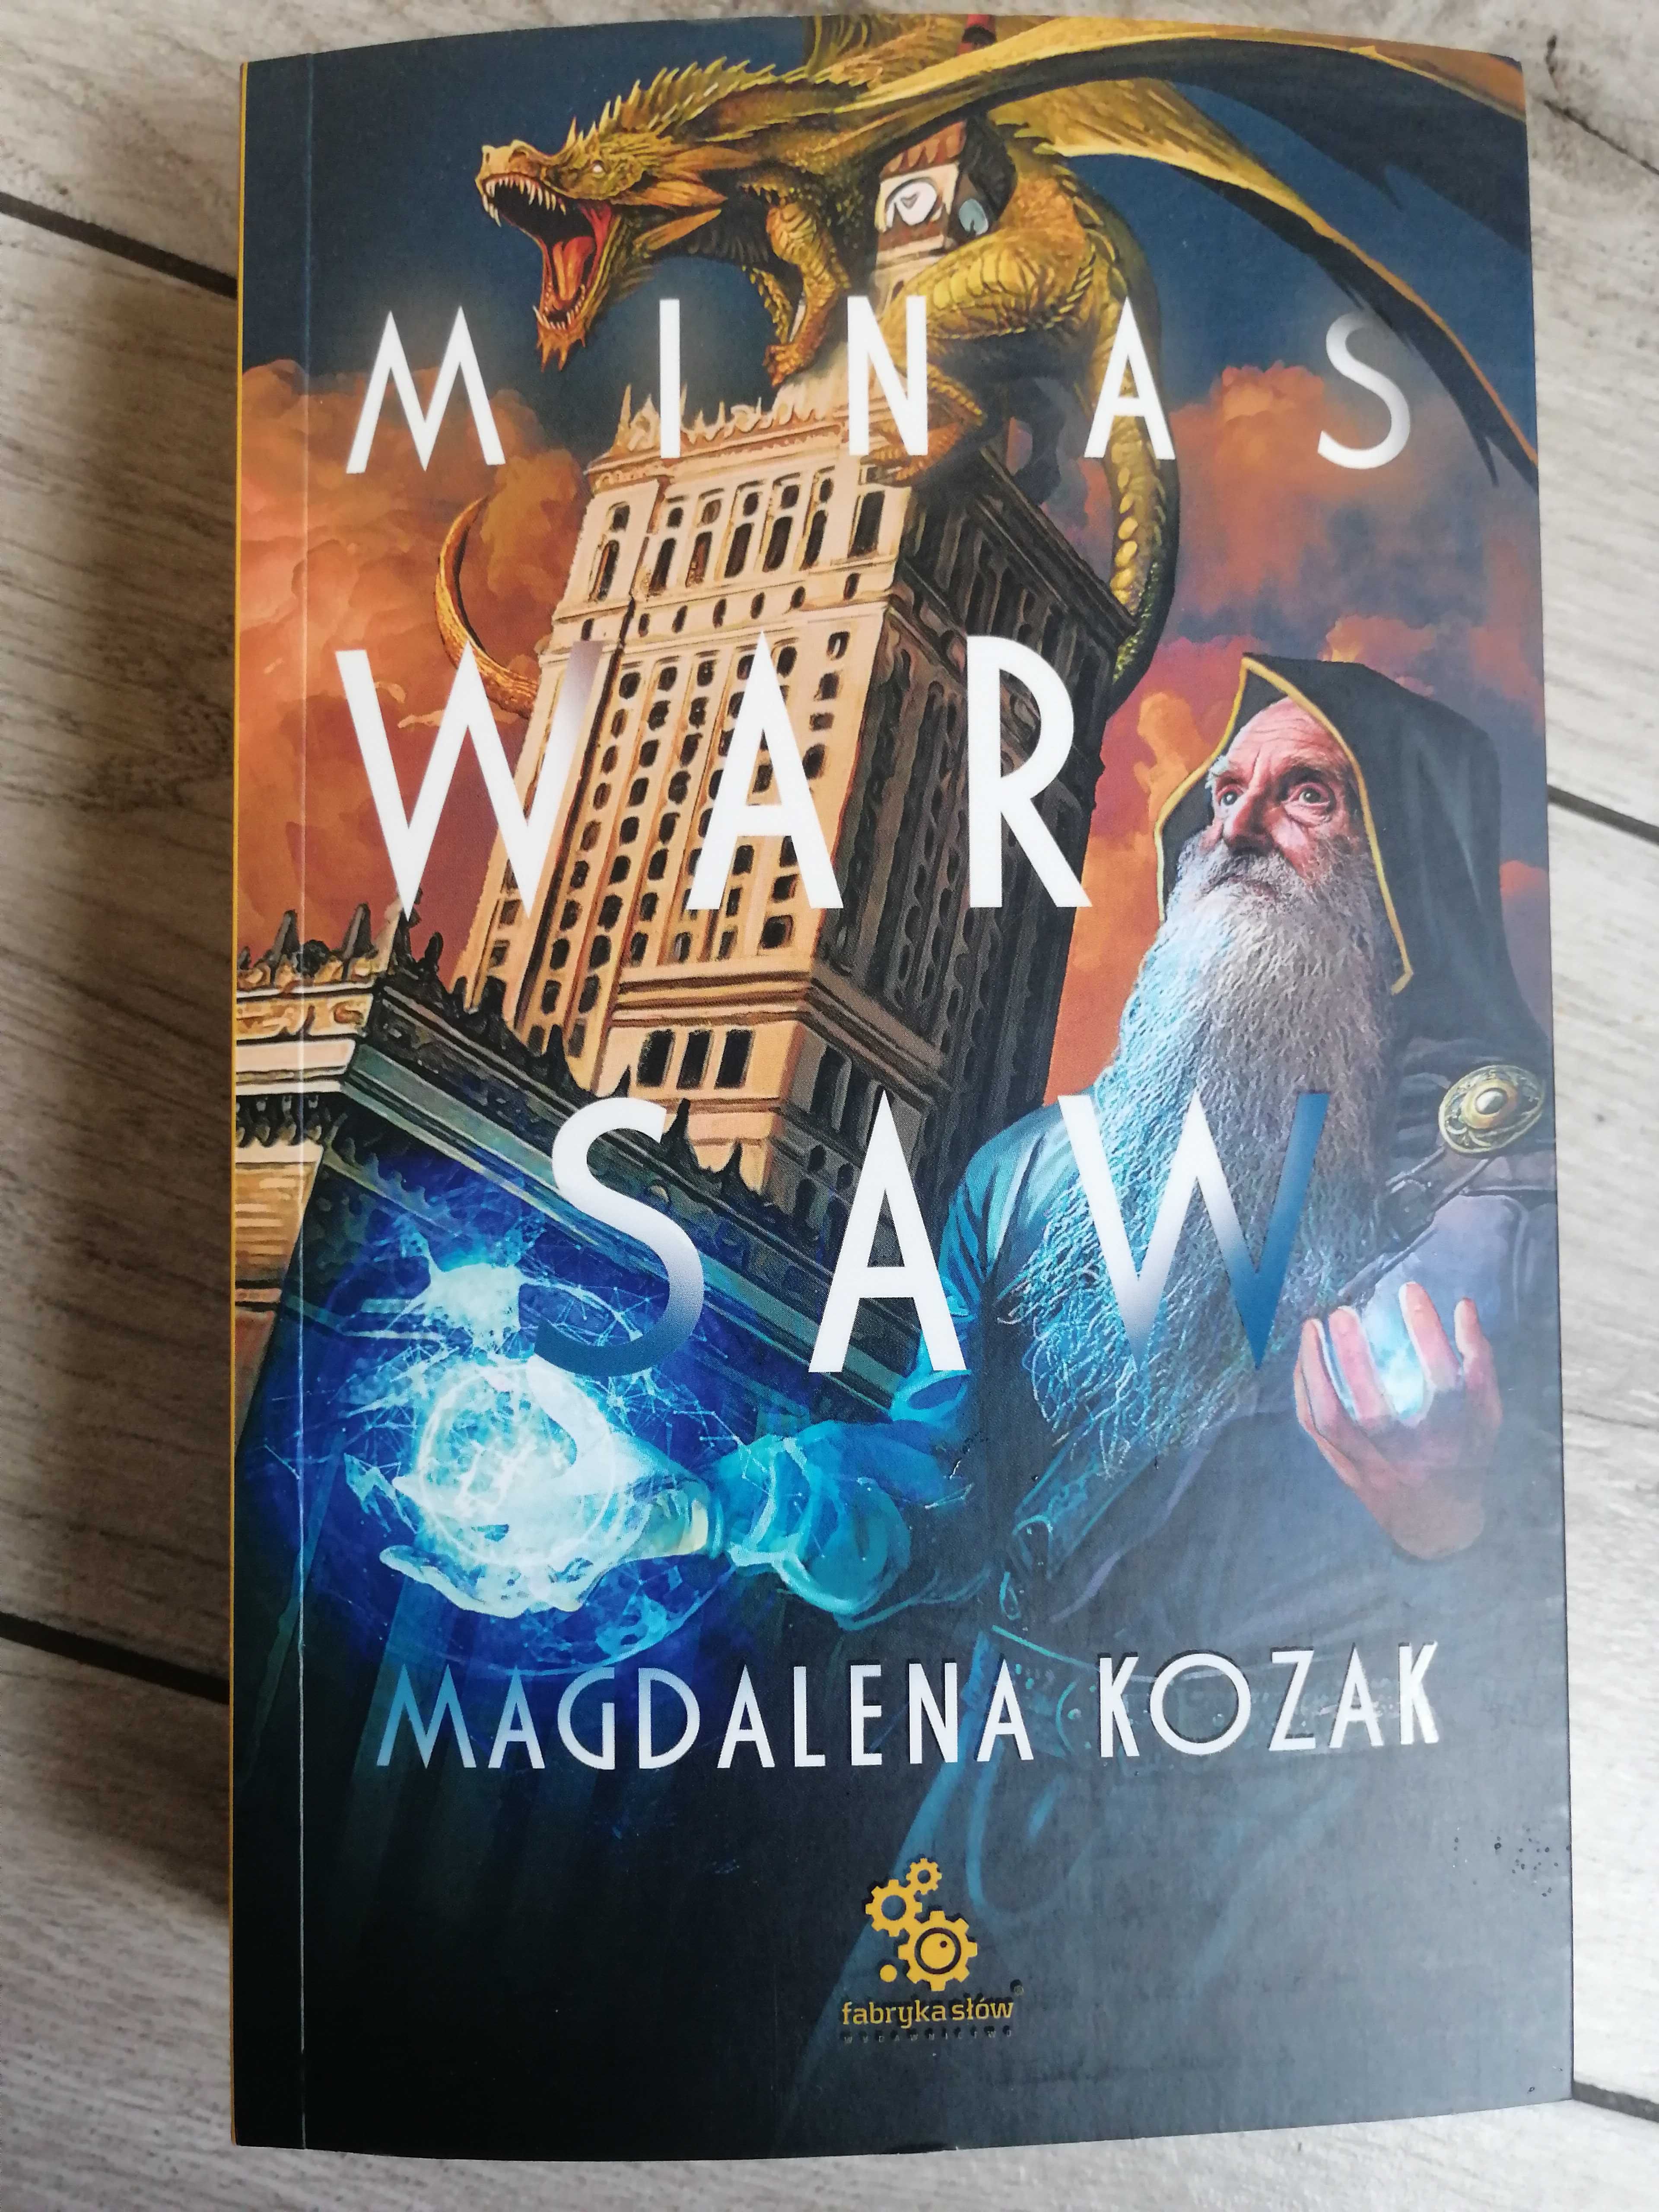 Minas Warsaw. Magdalena Kozak książka